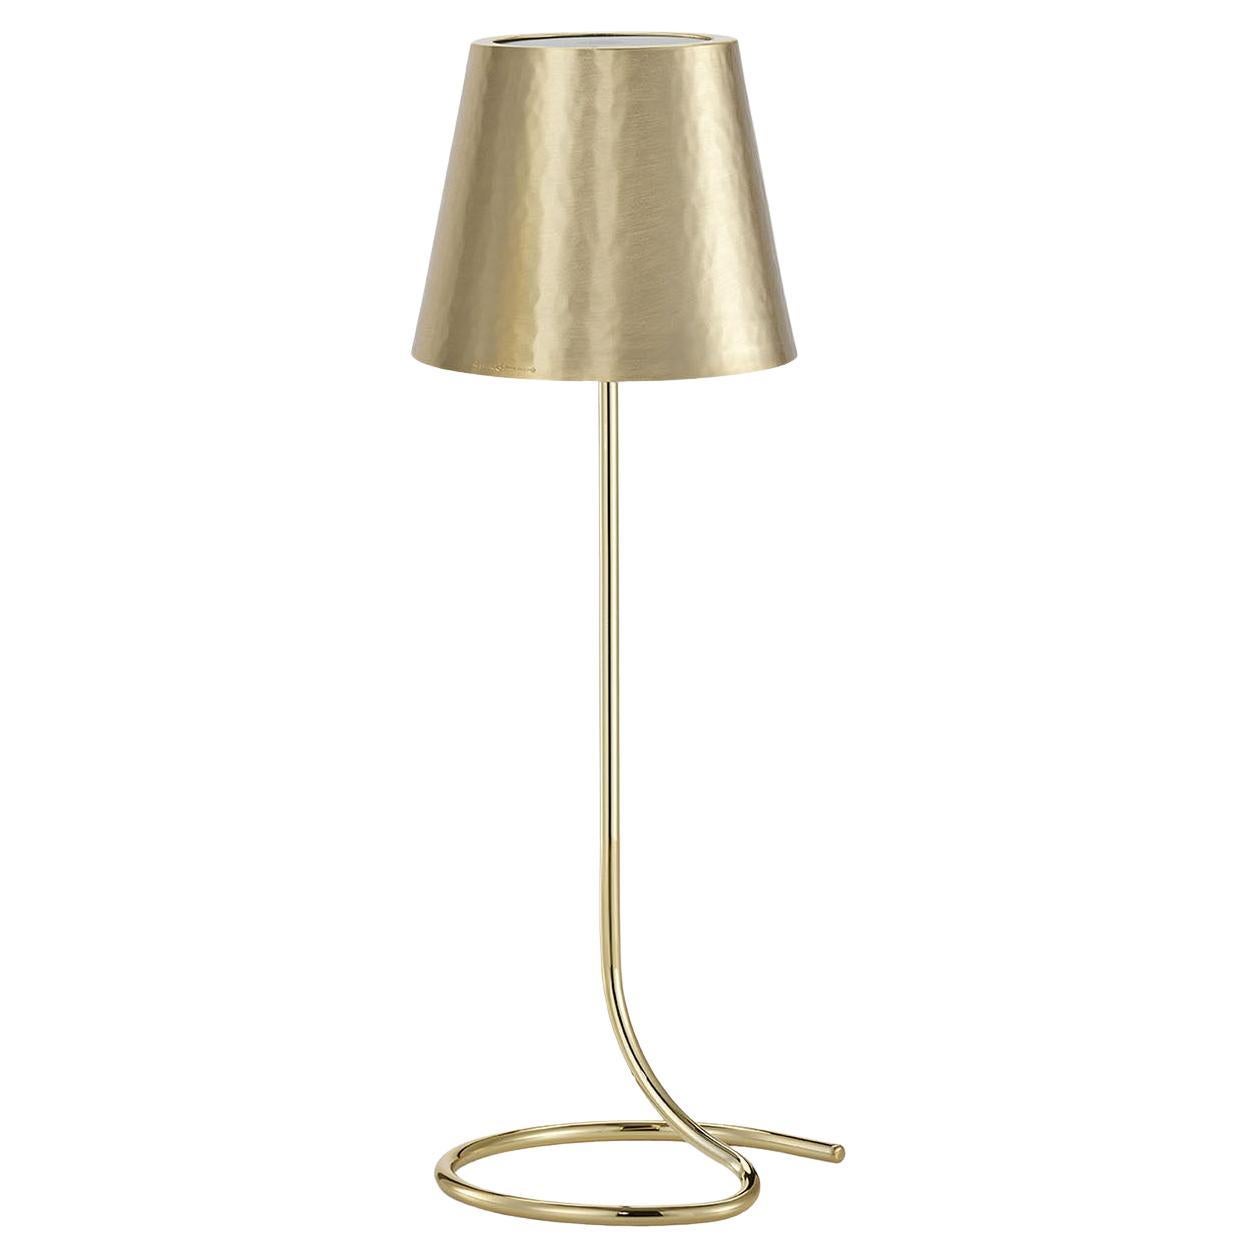 Goldene Lampe #2 von Itamar Harari